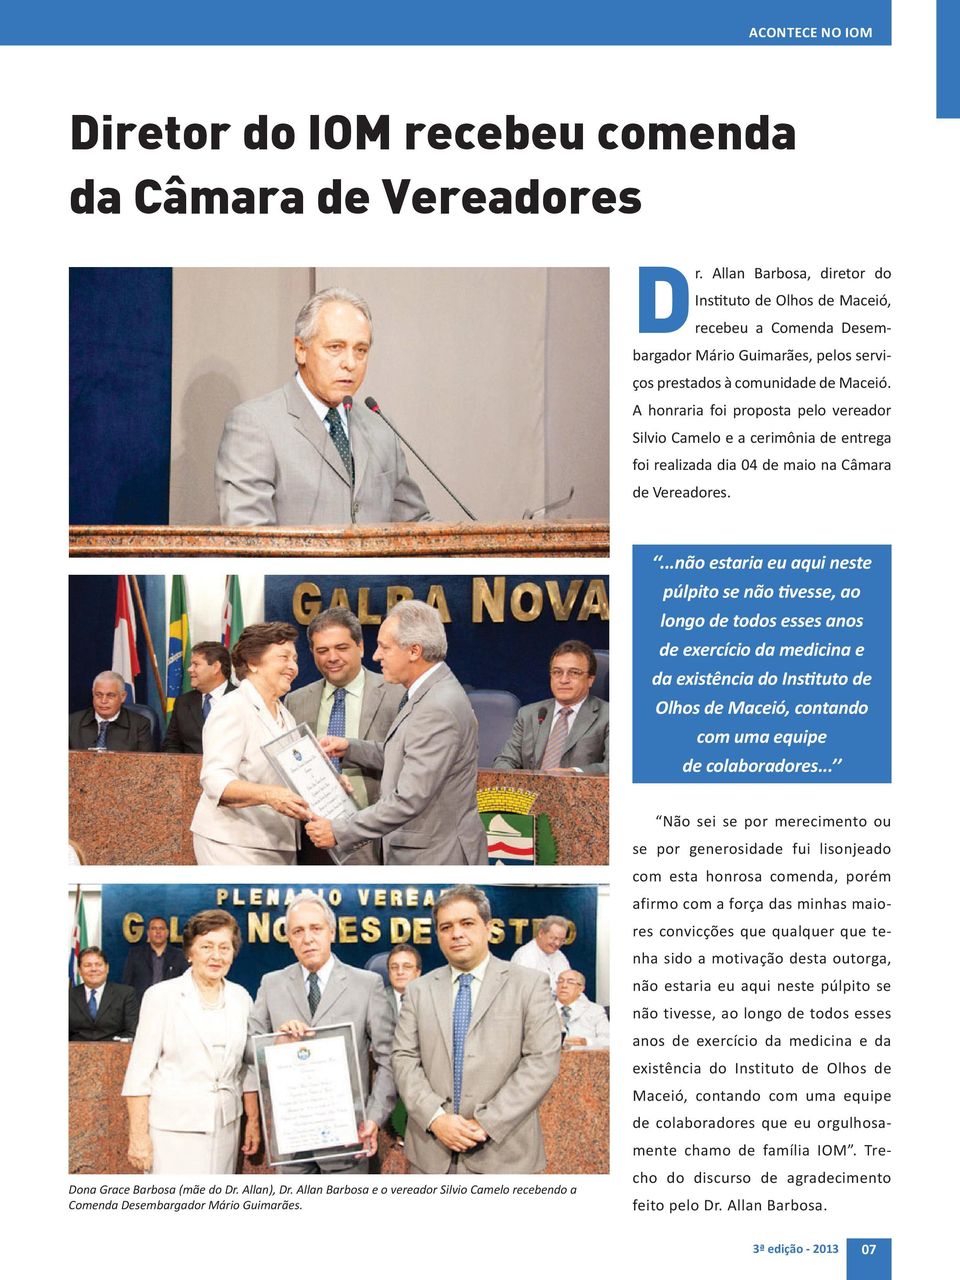 A honraria foi proposta pelo vereador Silvio Camelo e a cerimônia de entrega foi realizada dia 04 de maio na Câmara de Vereadores.